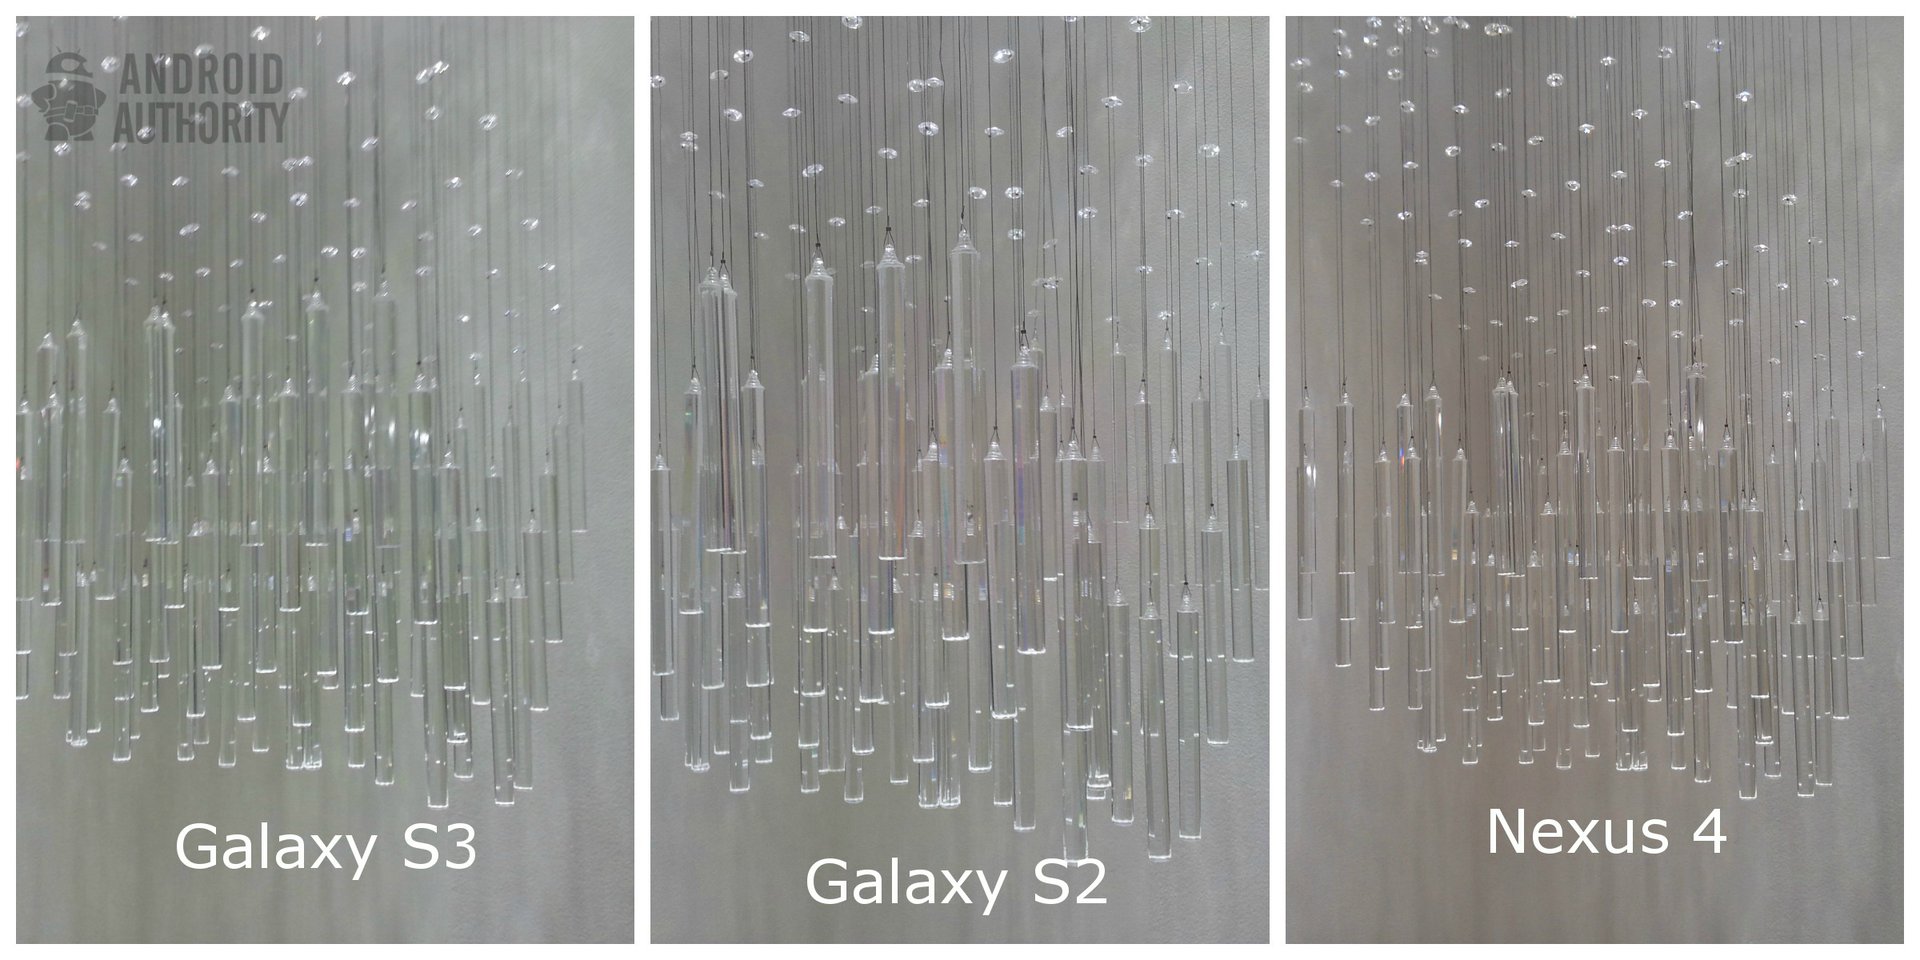 galaxy-S3-nexus-4-galaxy-s2-chandelier-aa